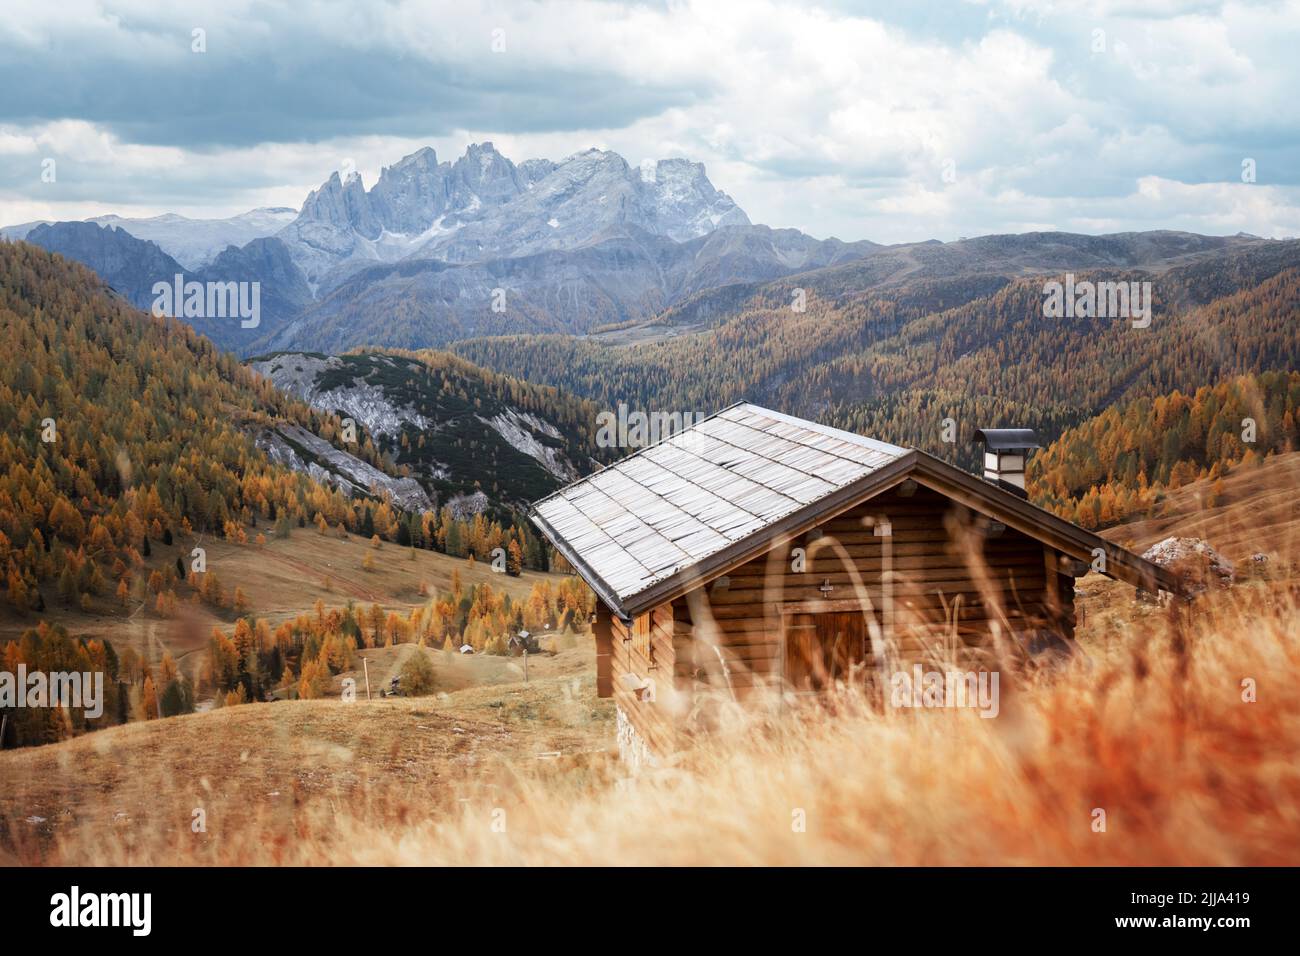 Incroyable vue d'automne sur la vallée de Valfreda dans les Alpes Dolomites italiennes. Cabine en bois, herbe jaune, forêt de larches orange et sommets enneigés des montagnes sur fond. Dolomites, Italie. Photographie de paysage Banque D'Images